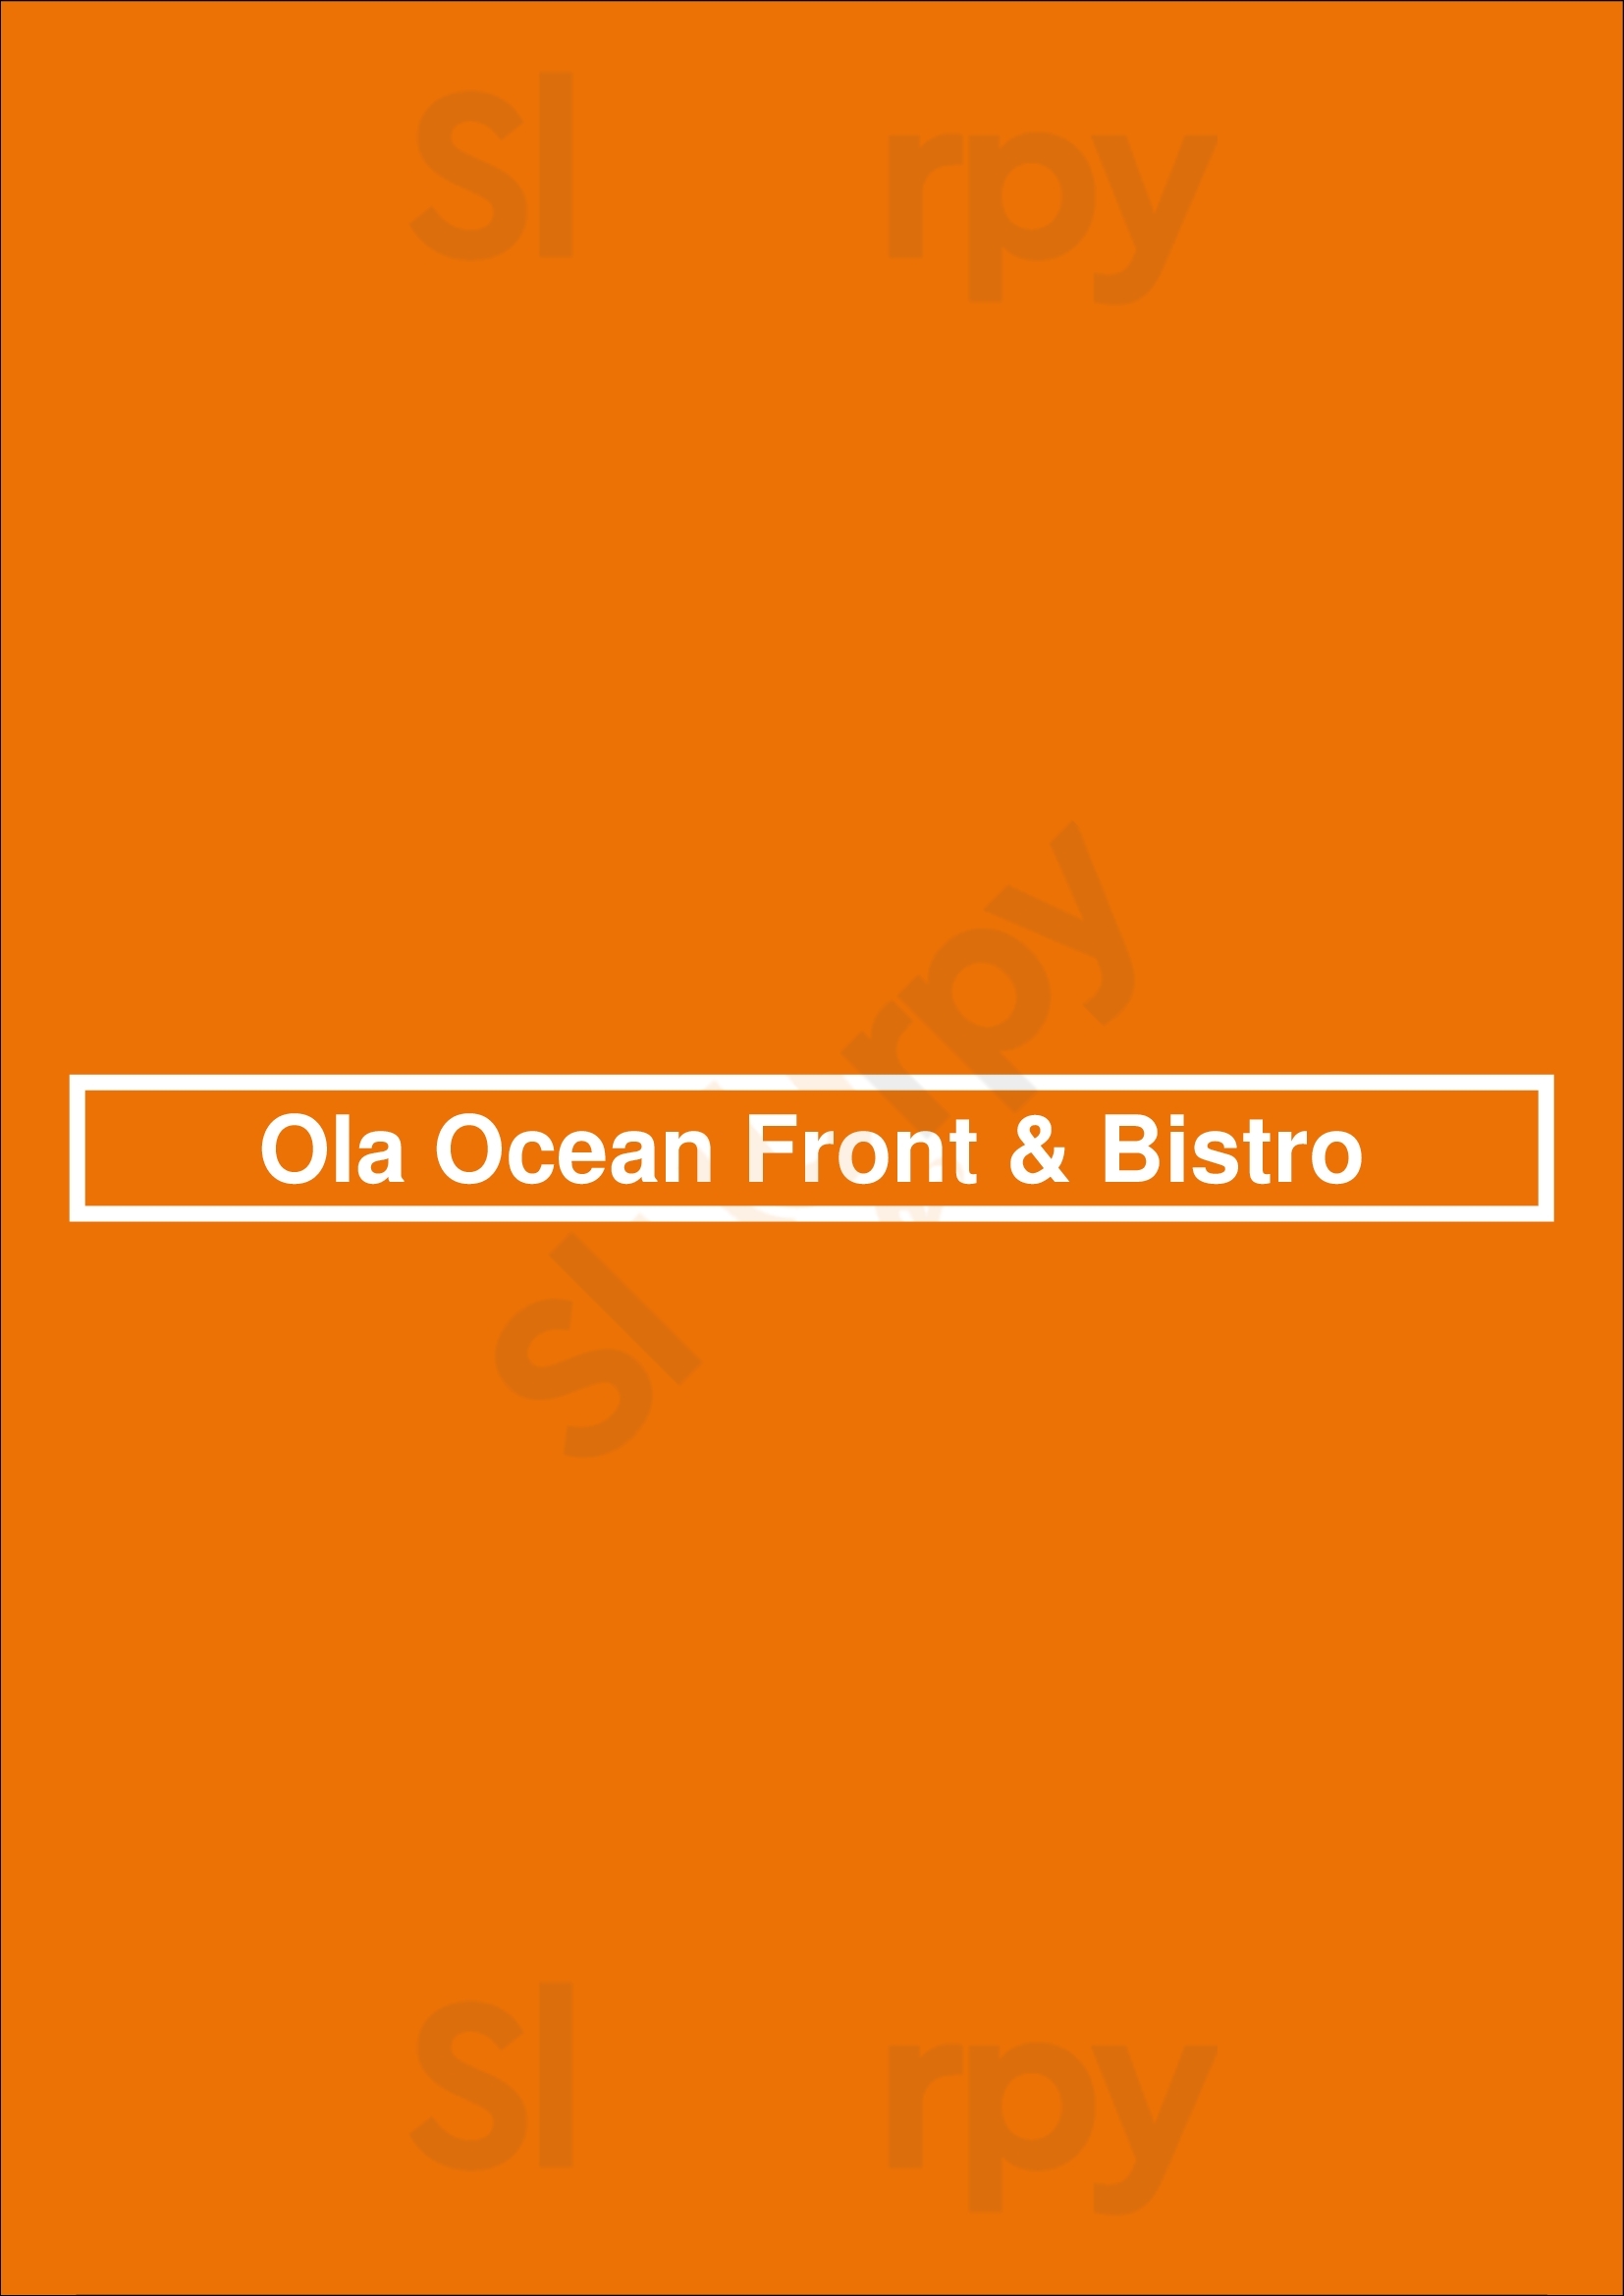 Ola Ocean Front & Bistro San Juan Menu - 1